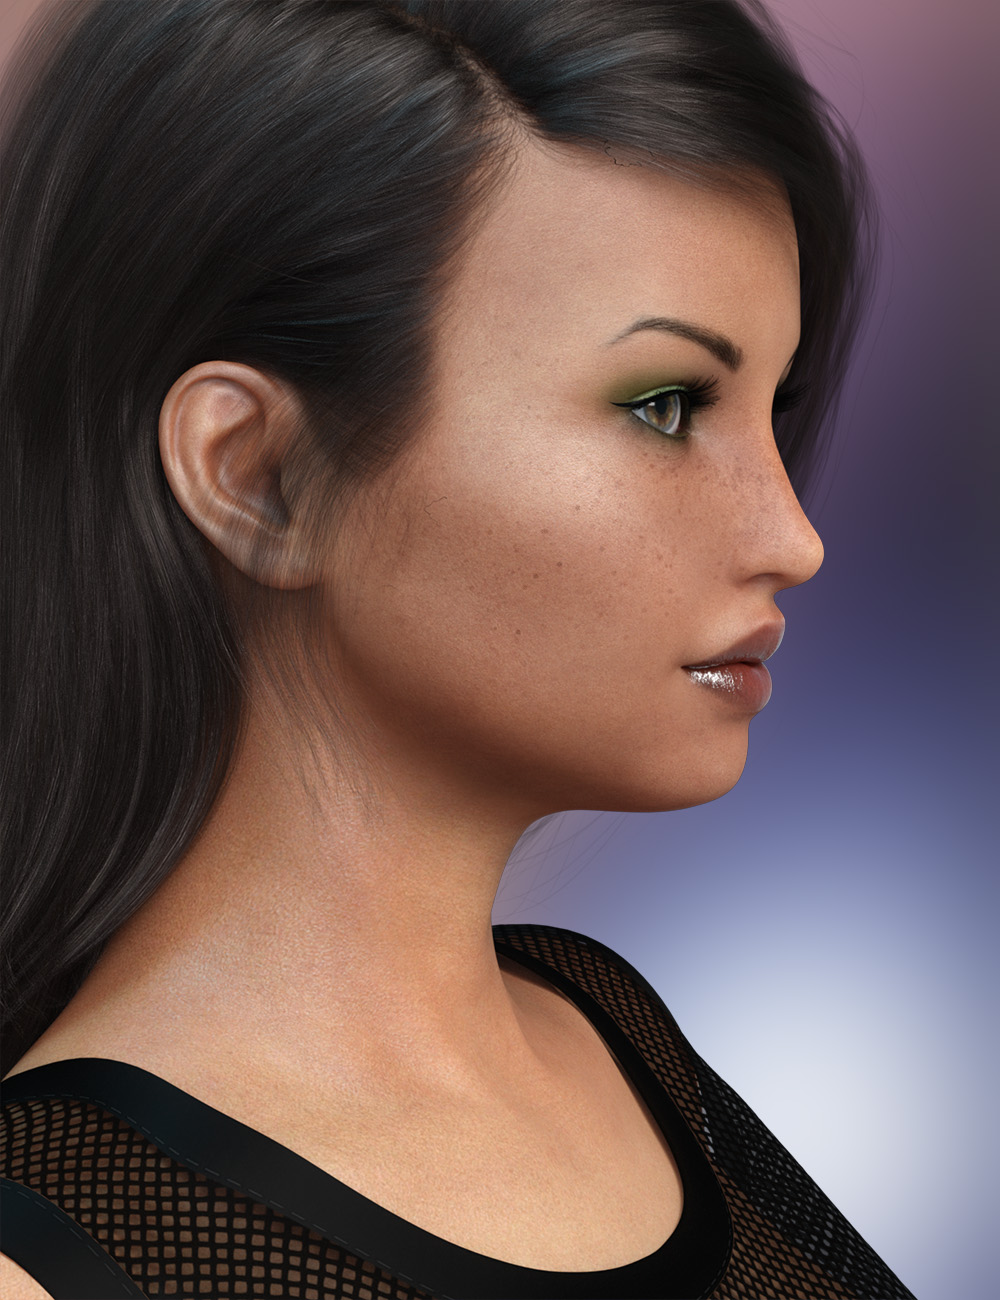 FWSA Zariah HD for Victoria 8 by: Fred Winkler ArtSabby, 3D Models by Daz 3D